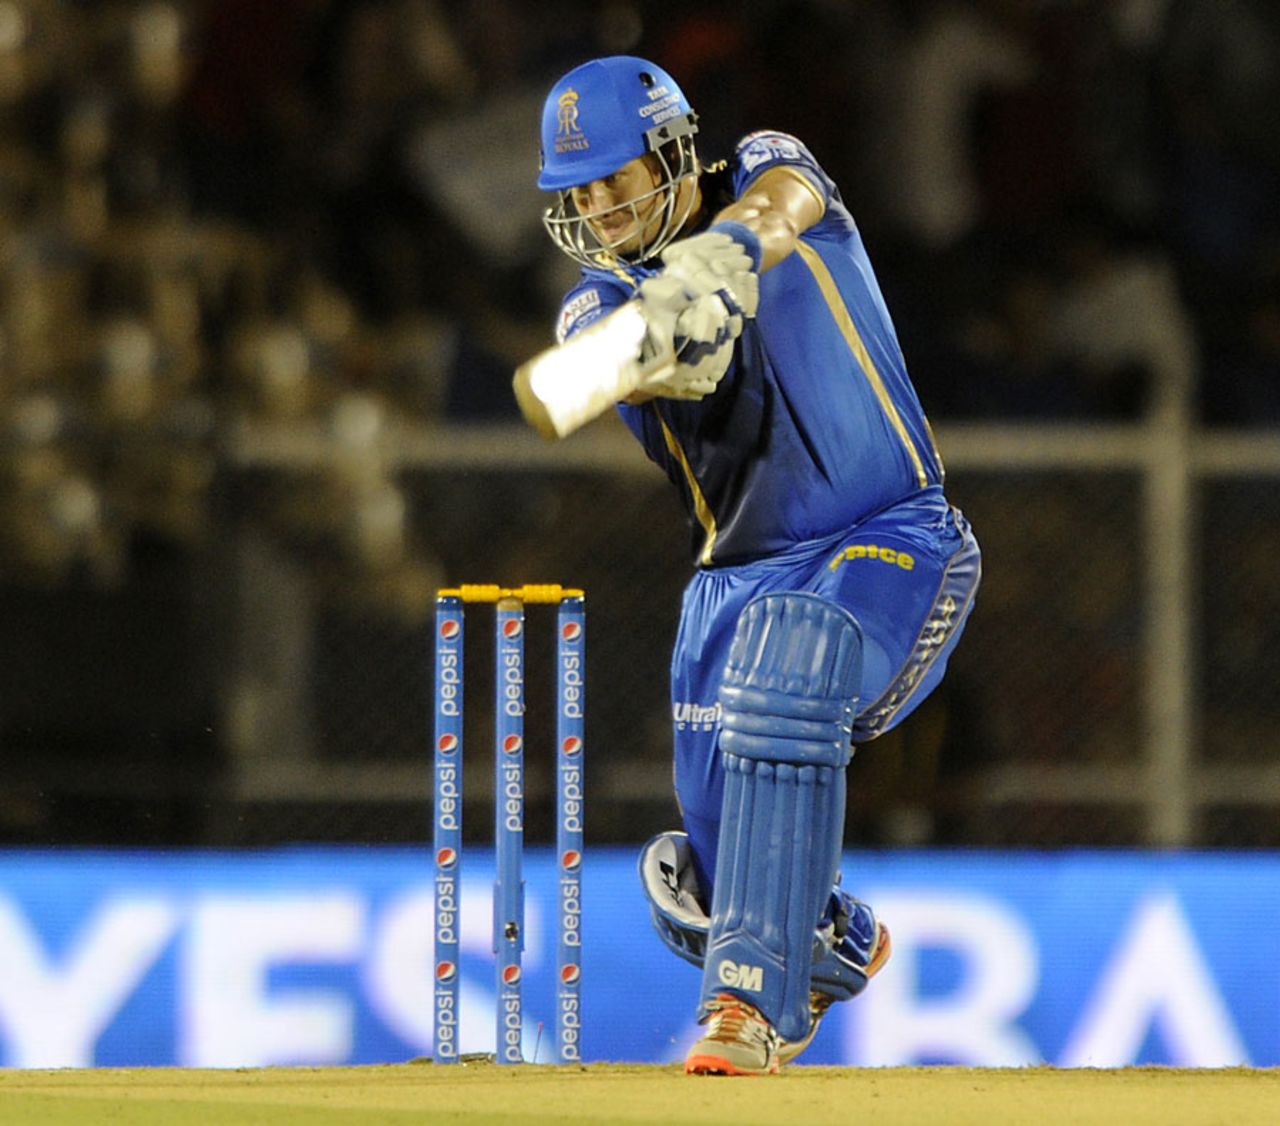 Shane Watson goes on the attack, Rajasthan Royals v Kolkata Knight Riders, IPL 2015, Mumbai, May 16, 2015